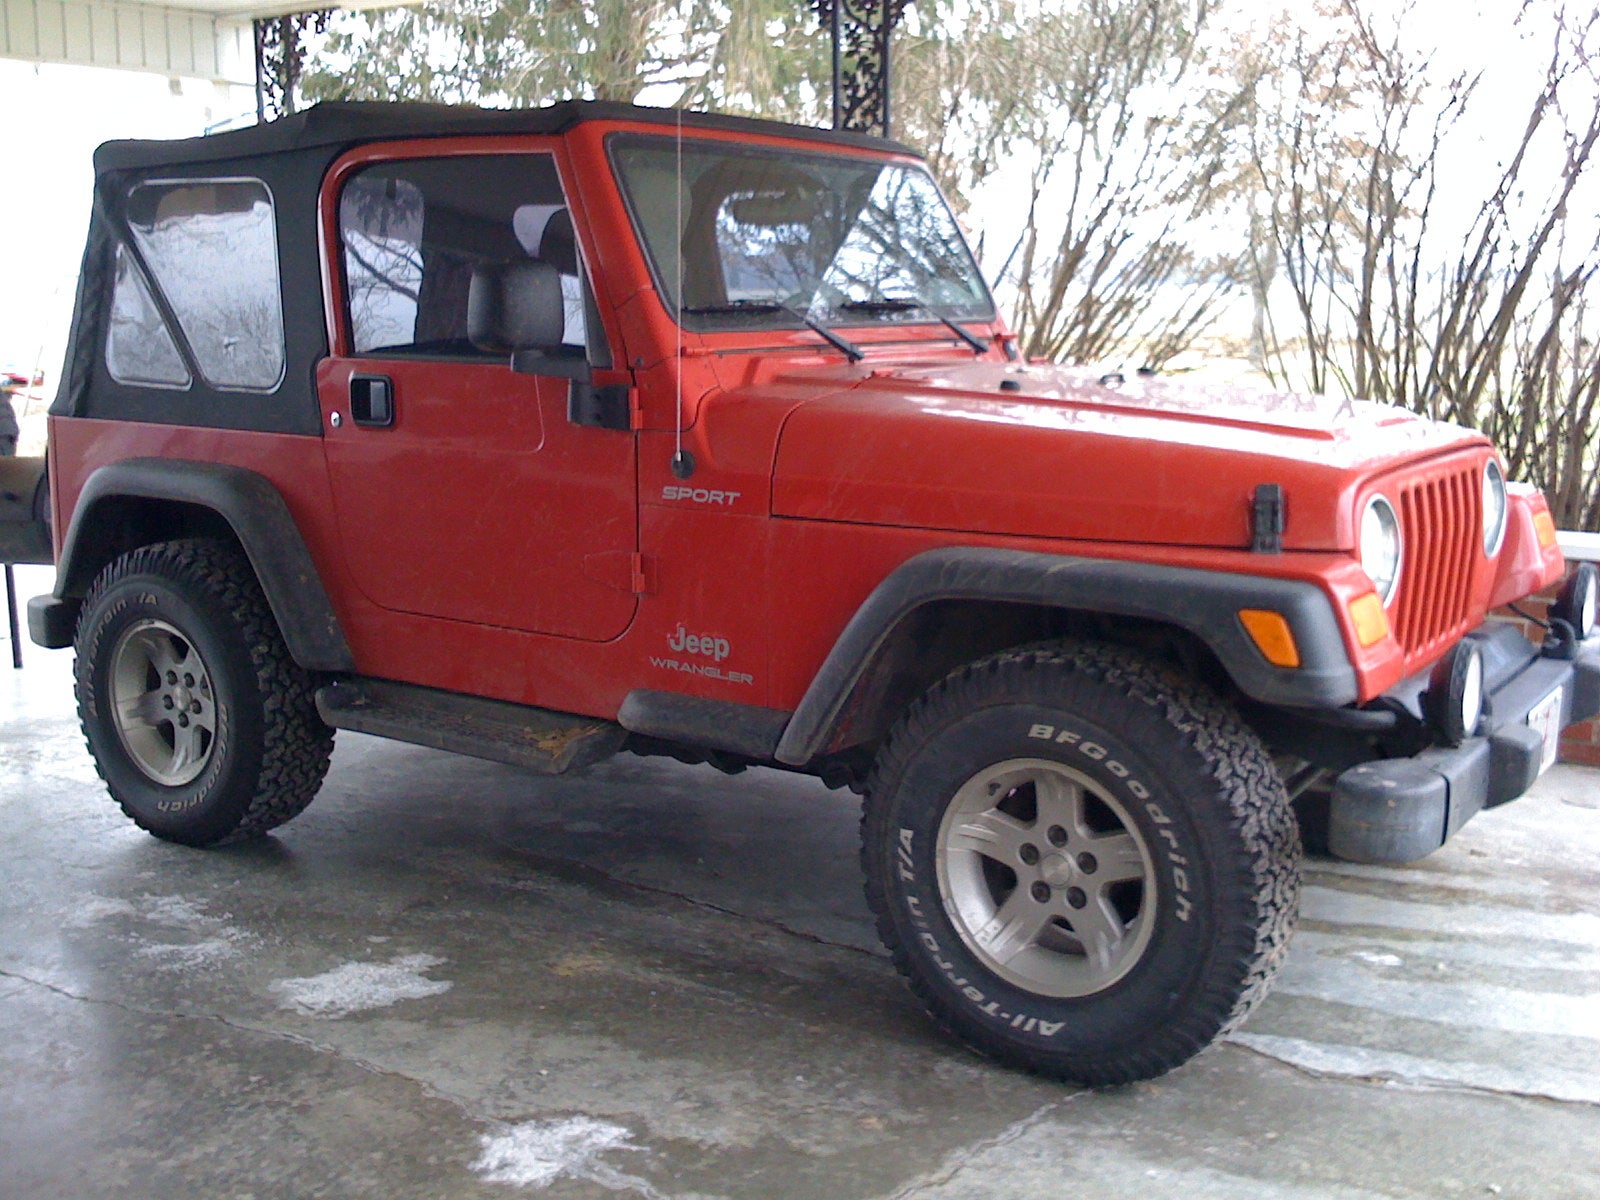 2004 Jeep wrangler model comparison